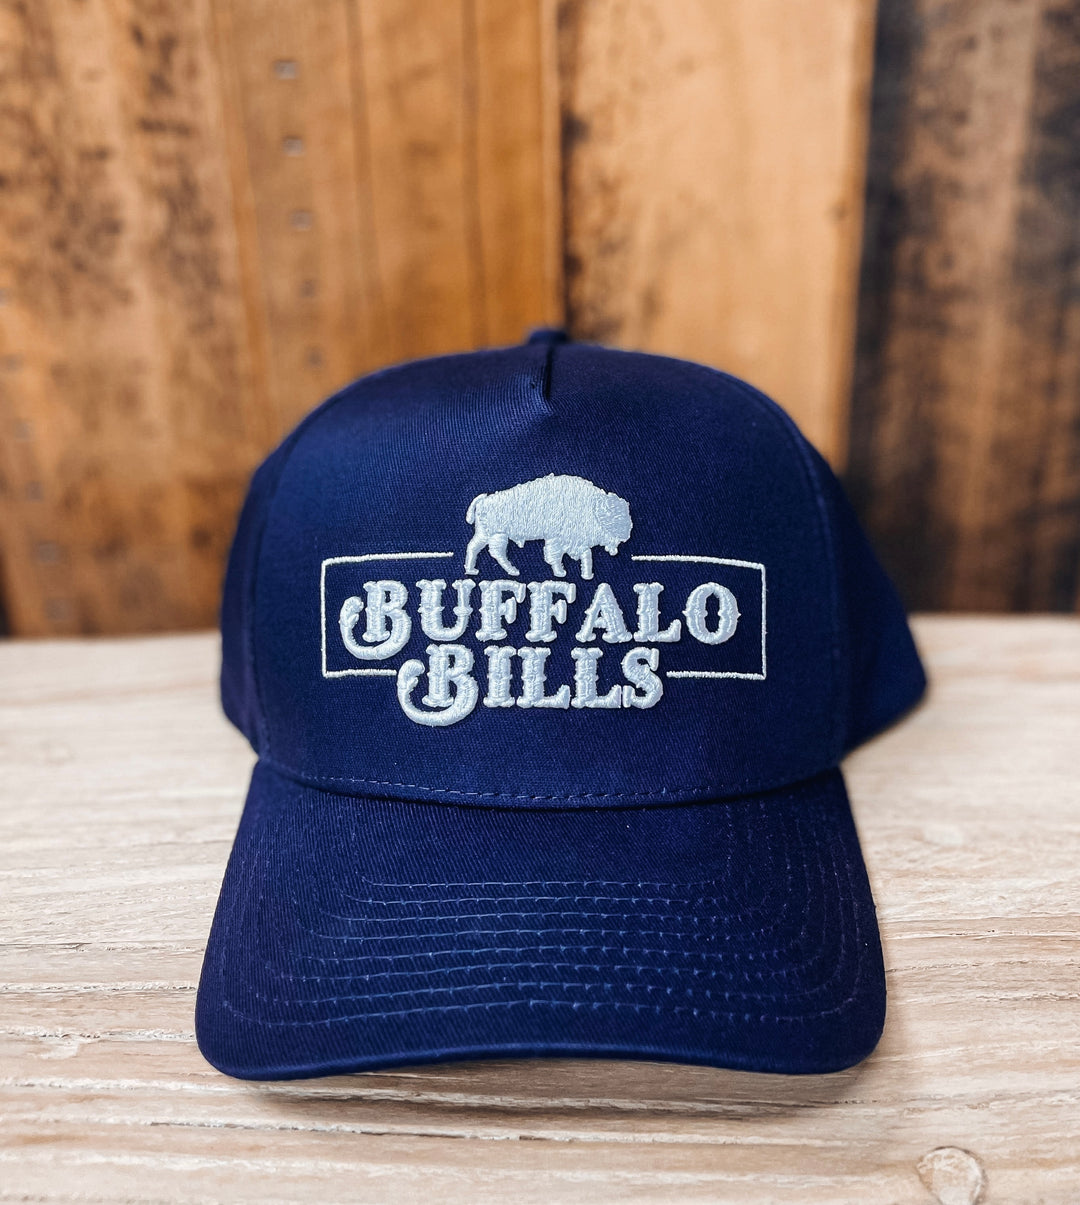 Buffalo Bills Western - Trucker Caps - Western Wear Australia